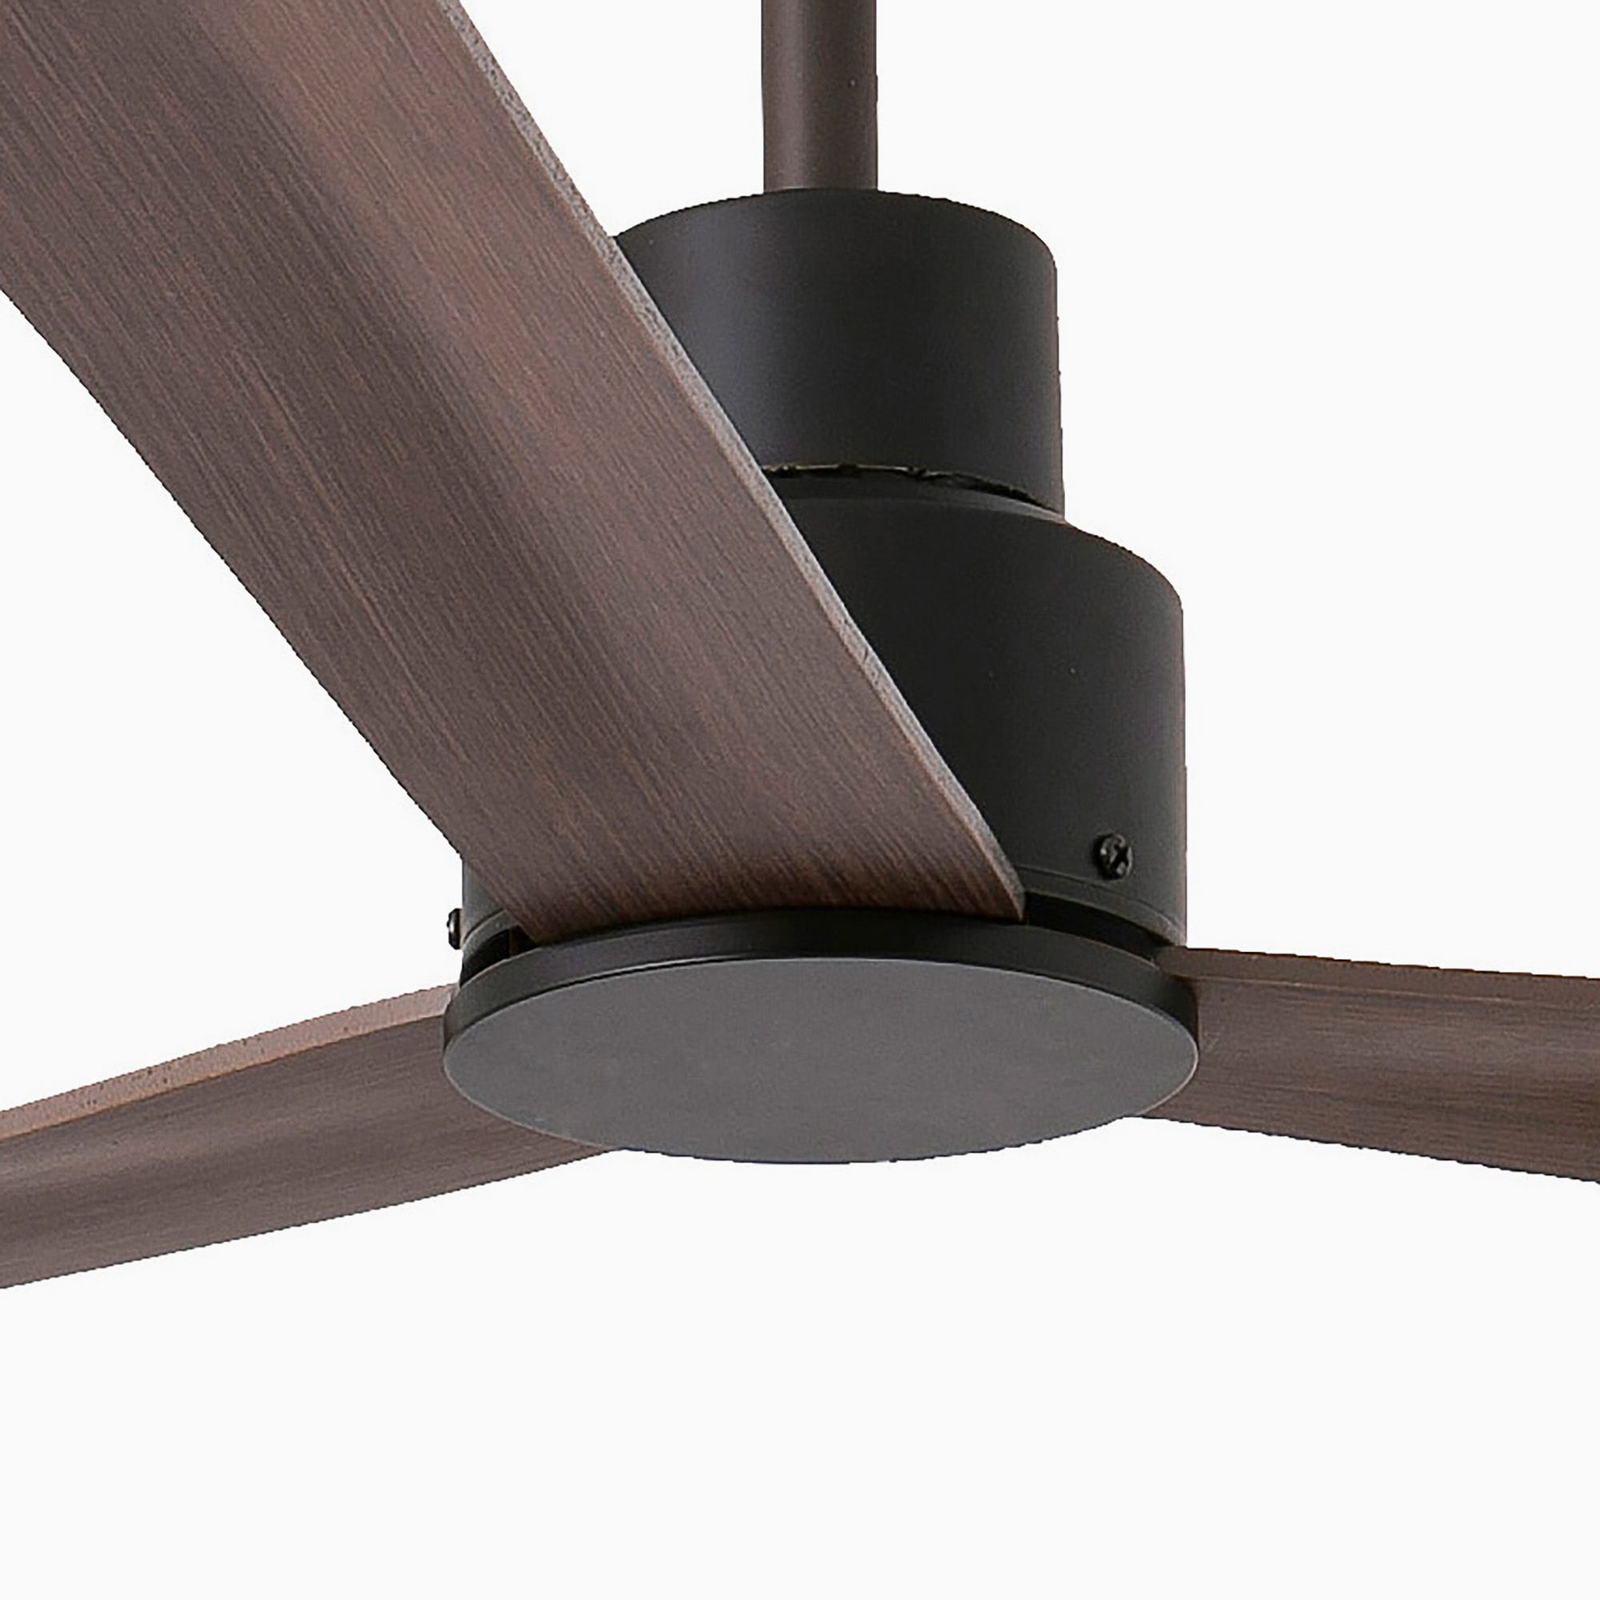 Nassau ceiling fan, DC, 3 blades, dark brown